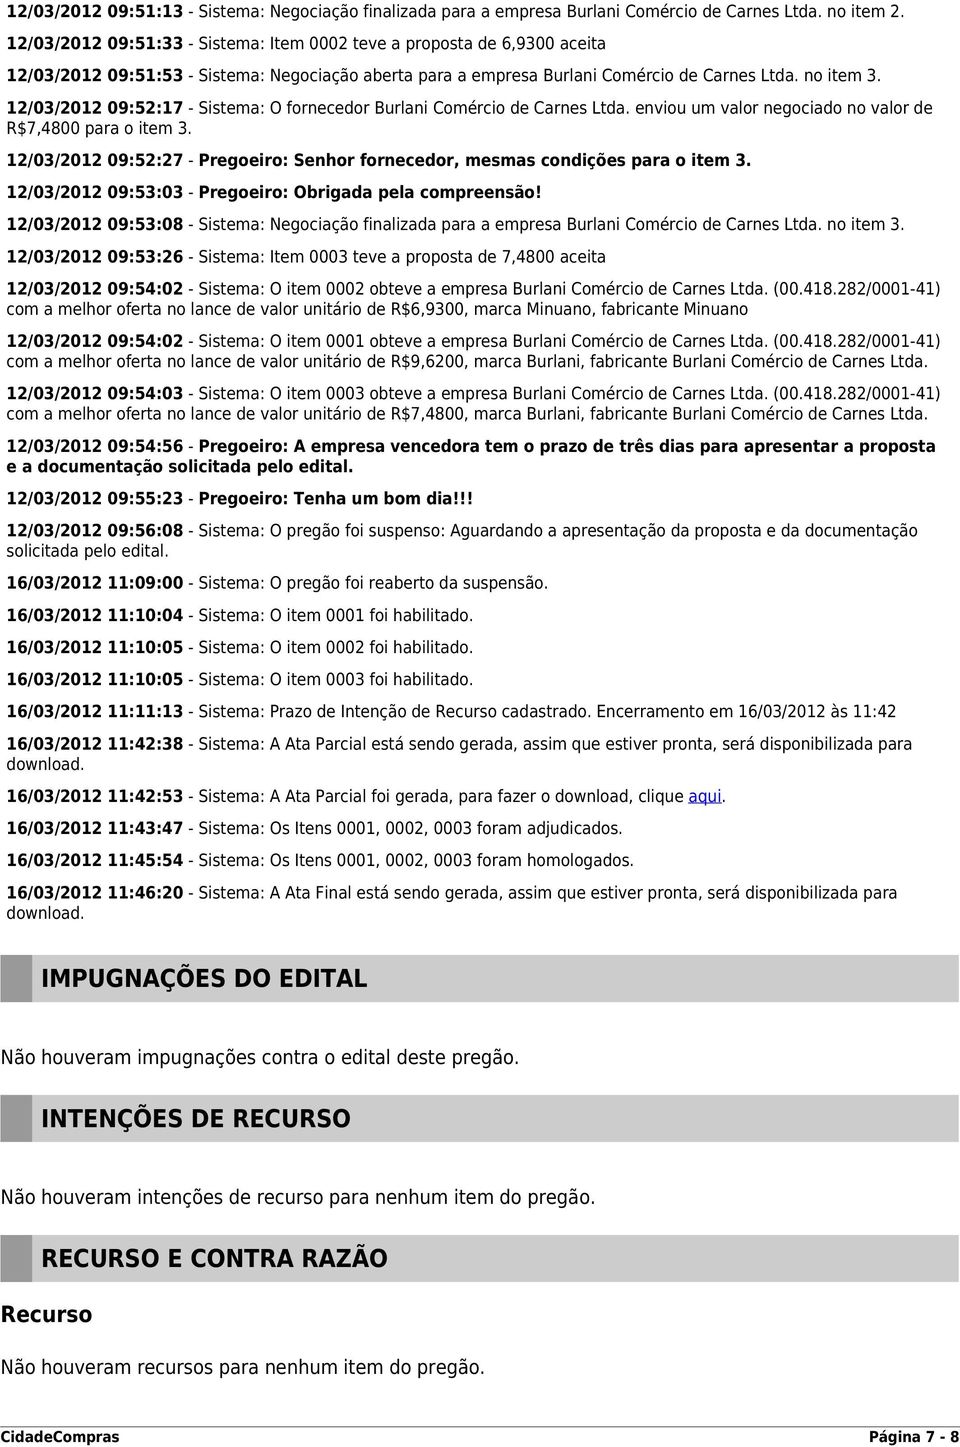 12/03/2012 09:52:17 - Sistema: O fornecedor Burlani Comércio de Carnes Ltda. enviou um valor negociado no valor de R$7,4800 para o item 3.